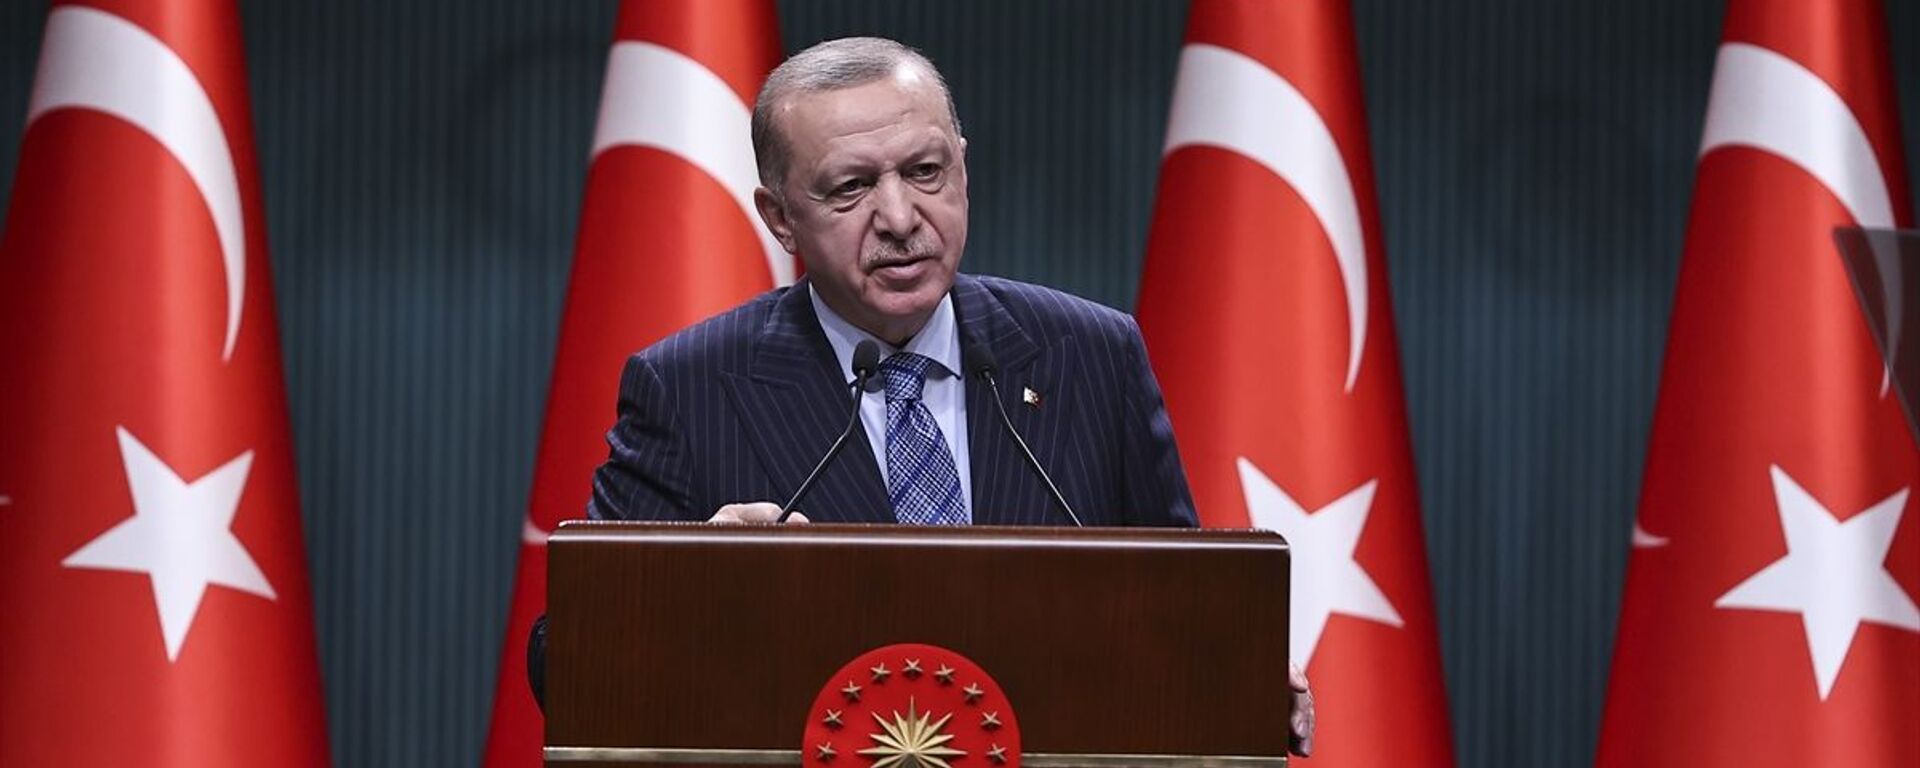 Türkiye Cumhurbaşkanı Recep Tayyip Erdoğan, Cumhurbaşkanlığı Kabine Toplantısı'nın ardından açıklamalarda bulundu. - Sputnik Türkiye, 1920, 26.05.2021